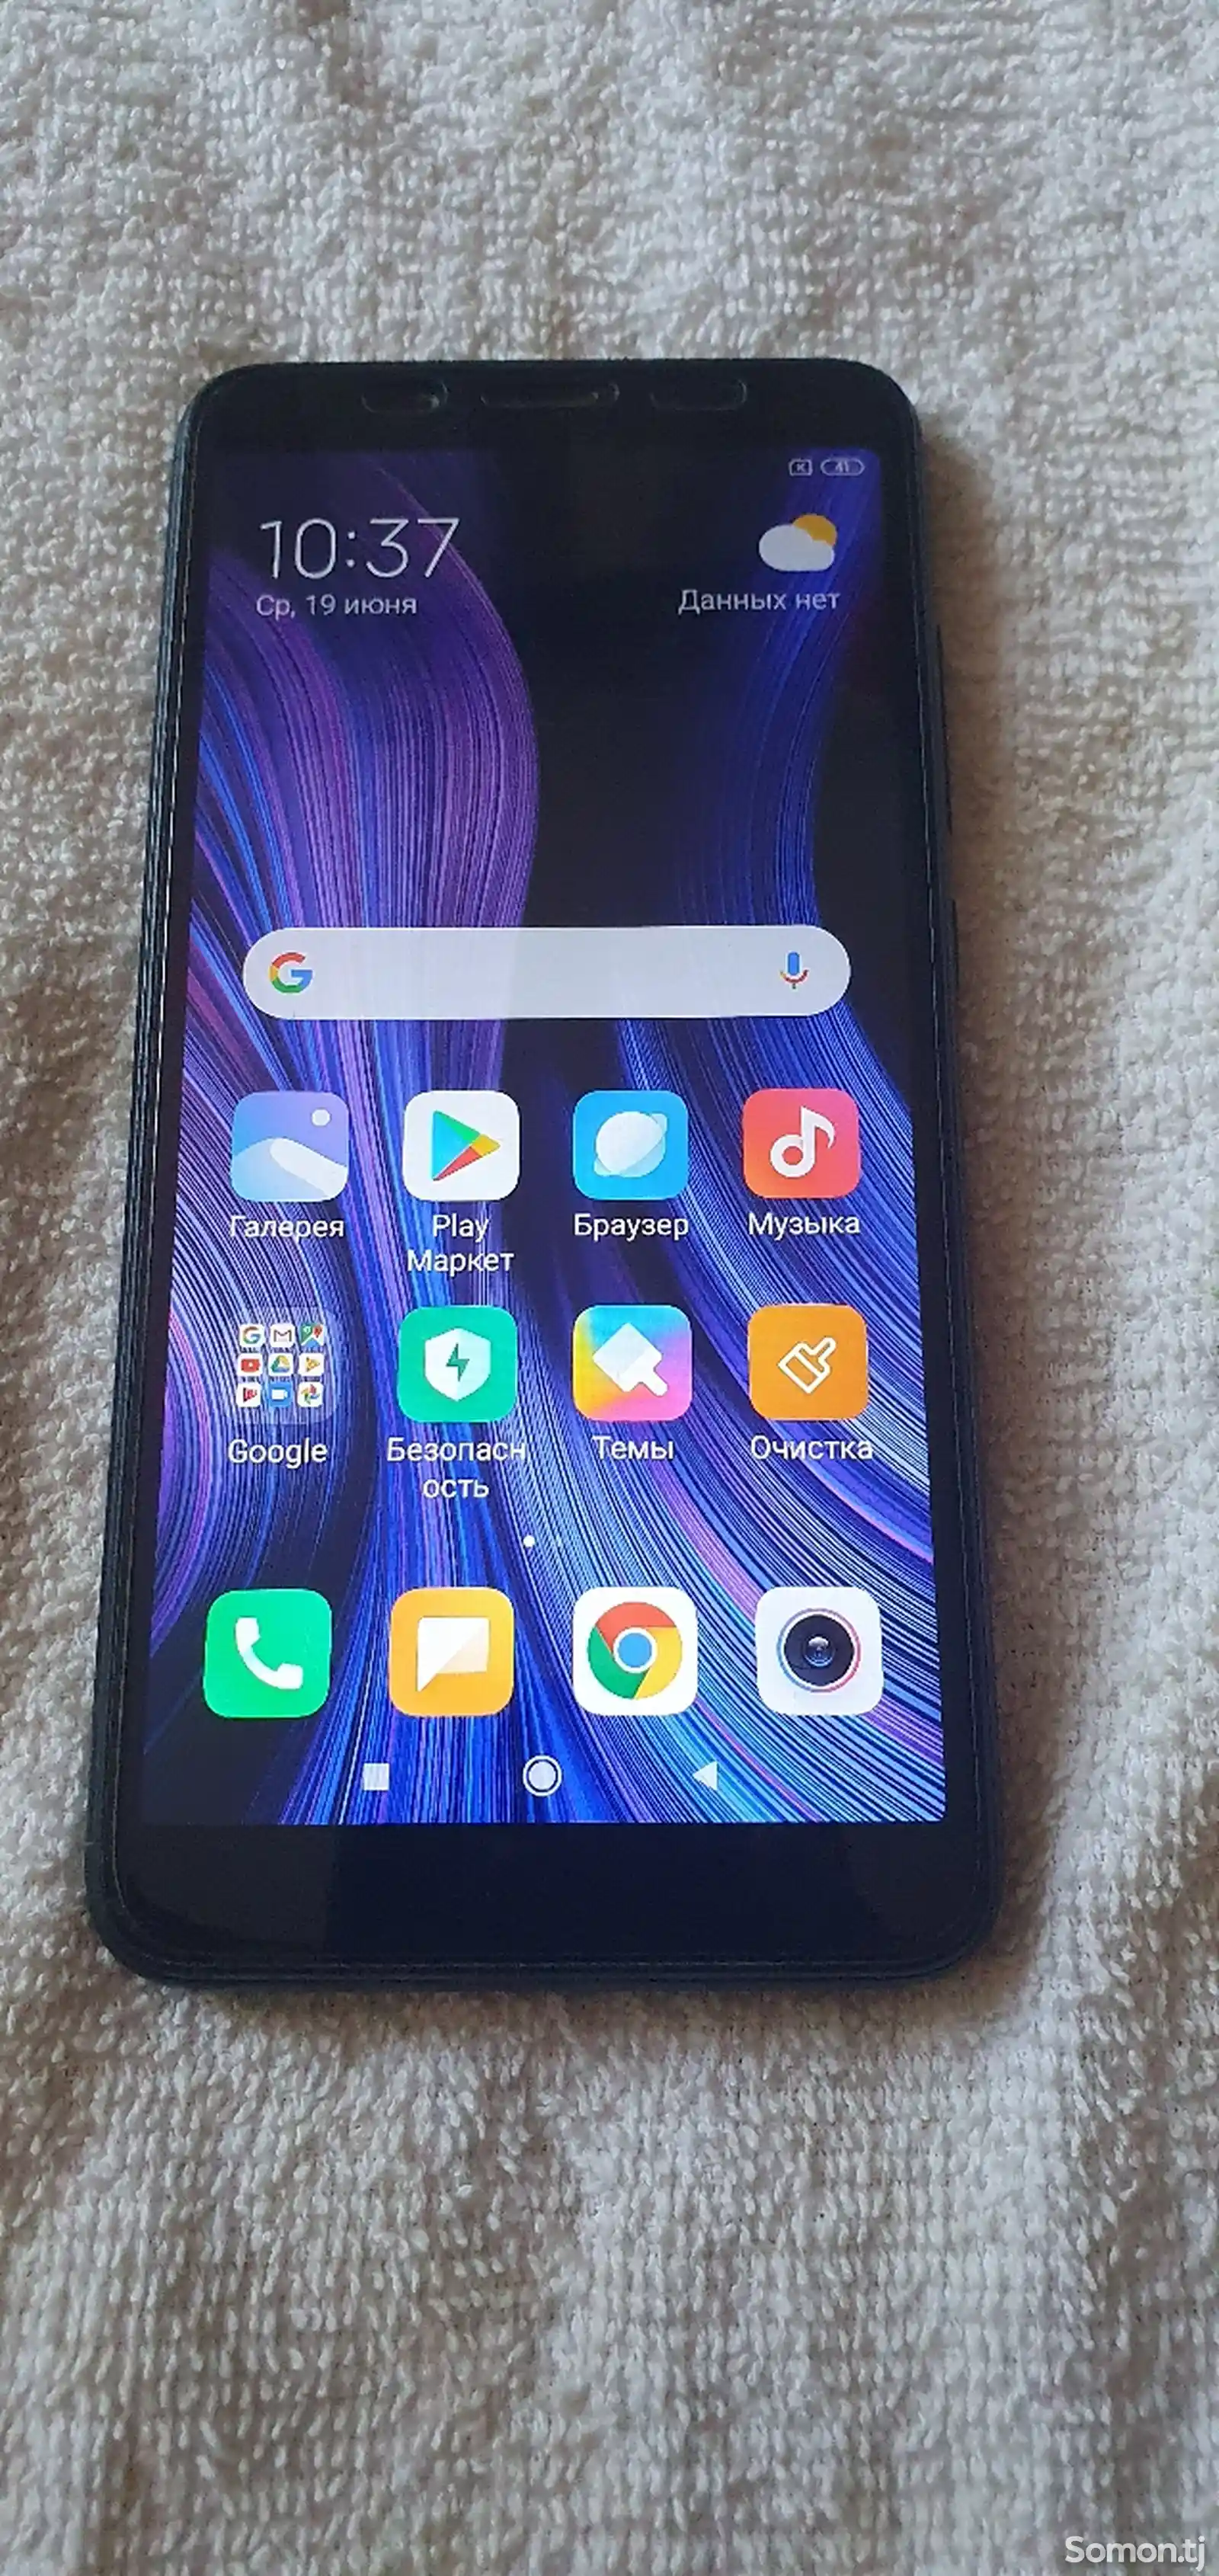 Xiaomi Redmi 6A-4